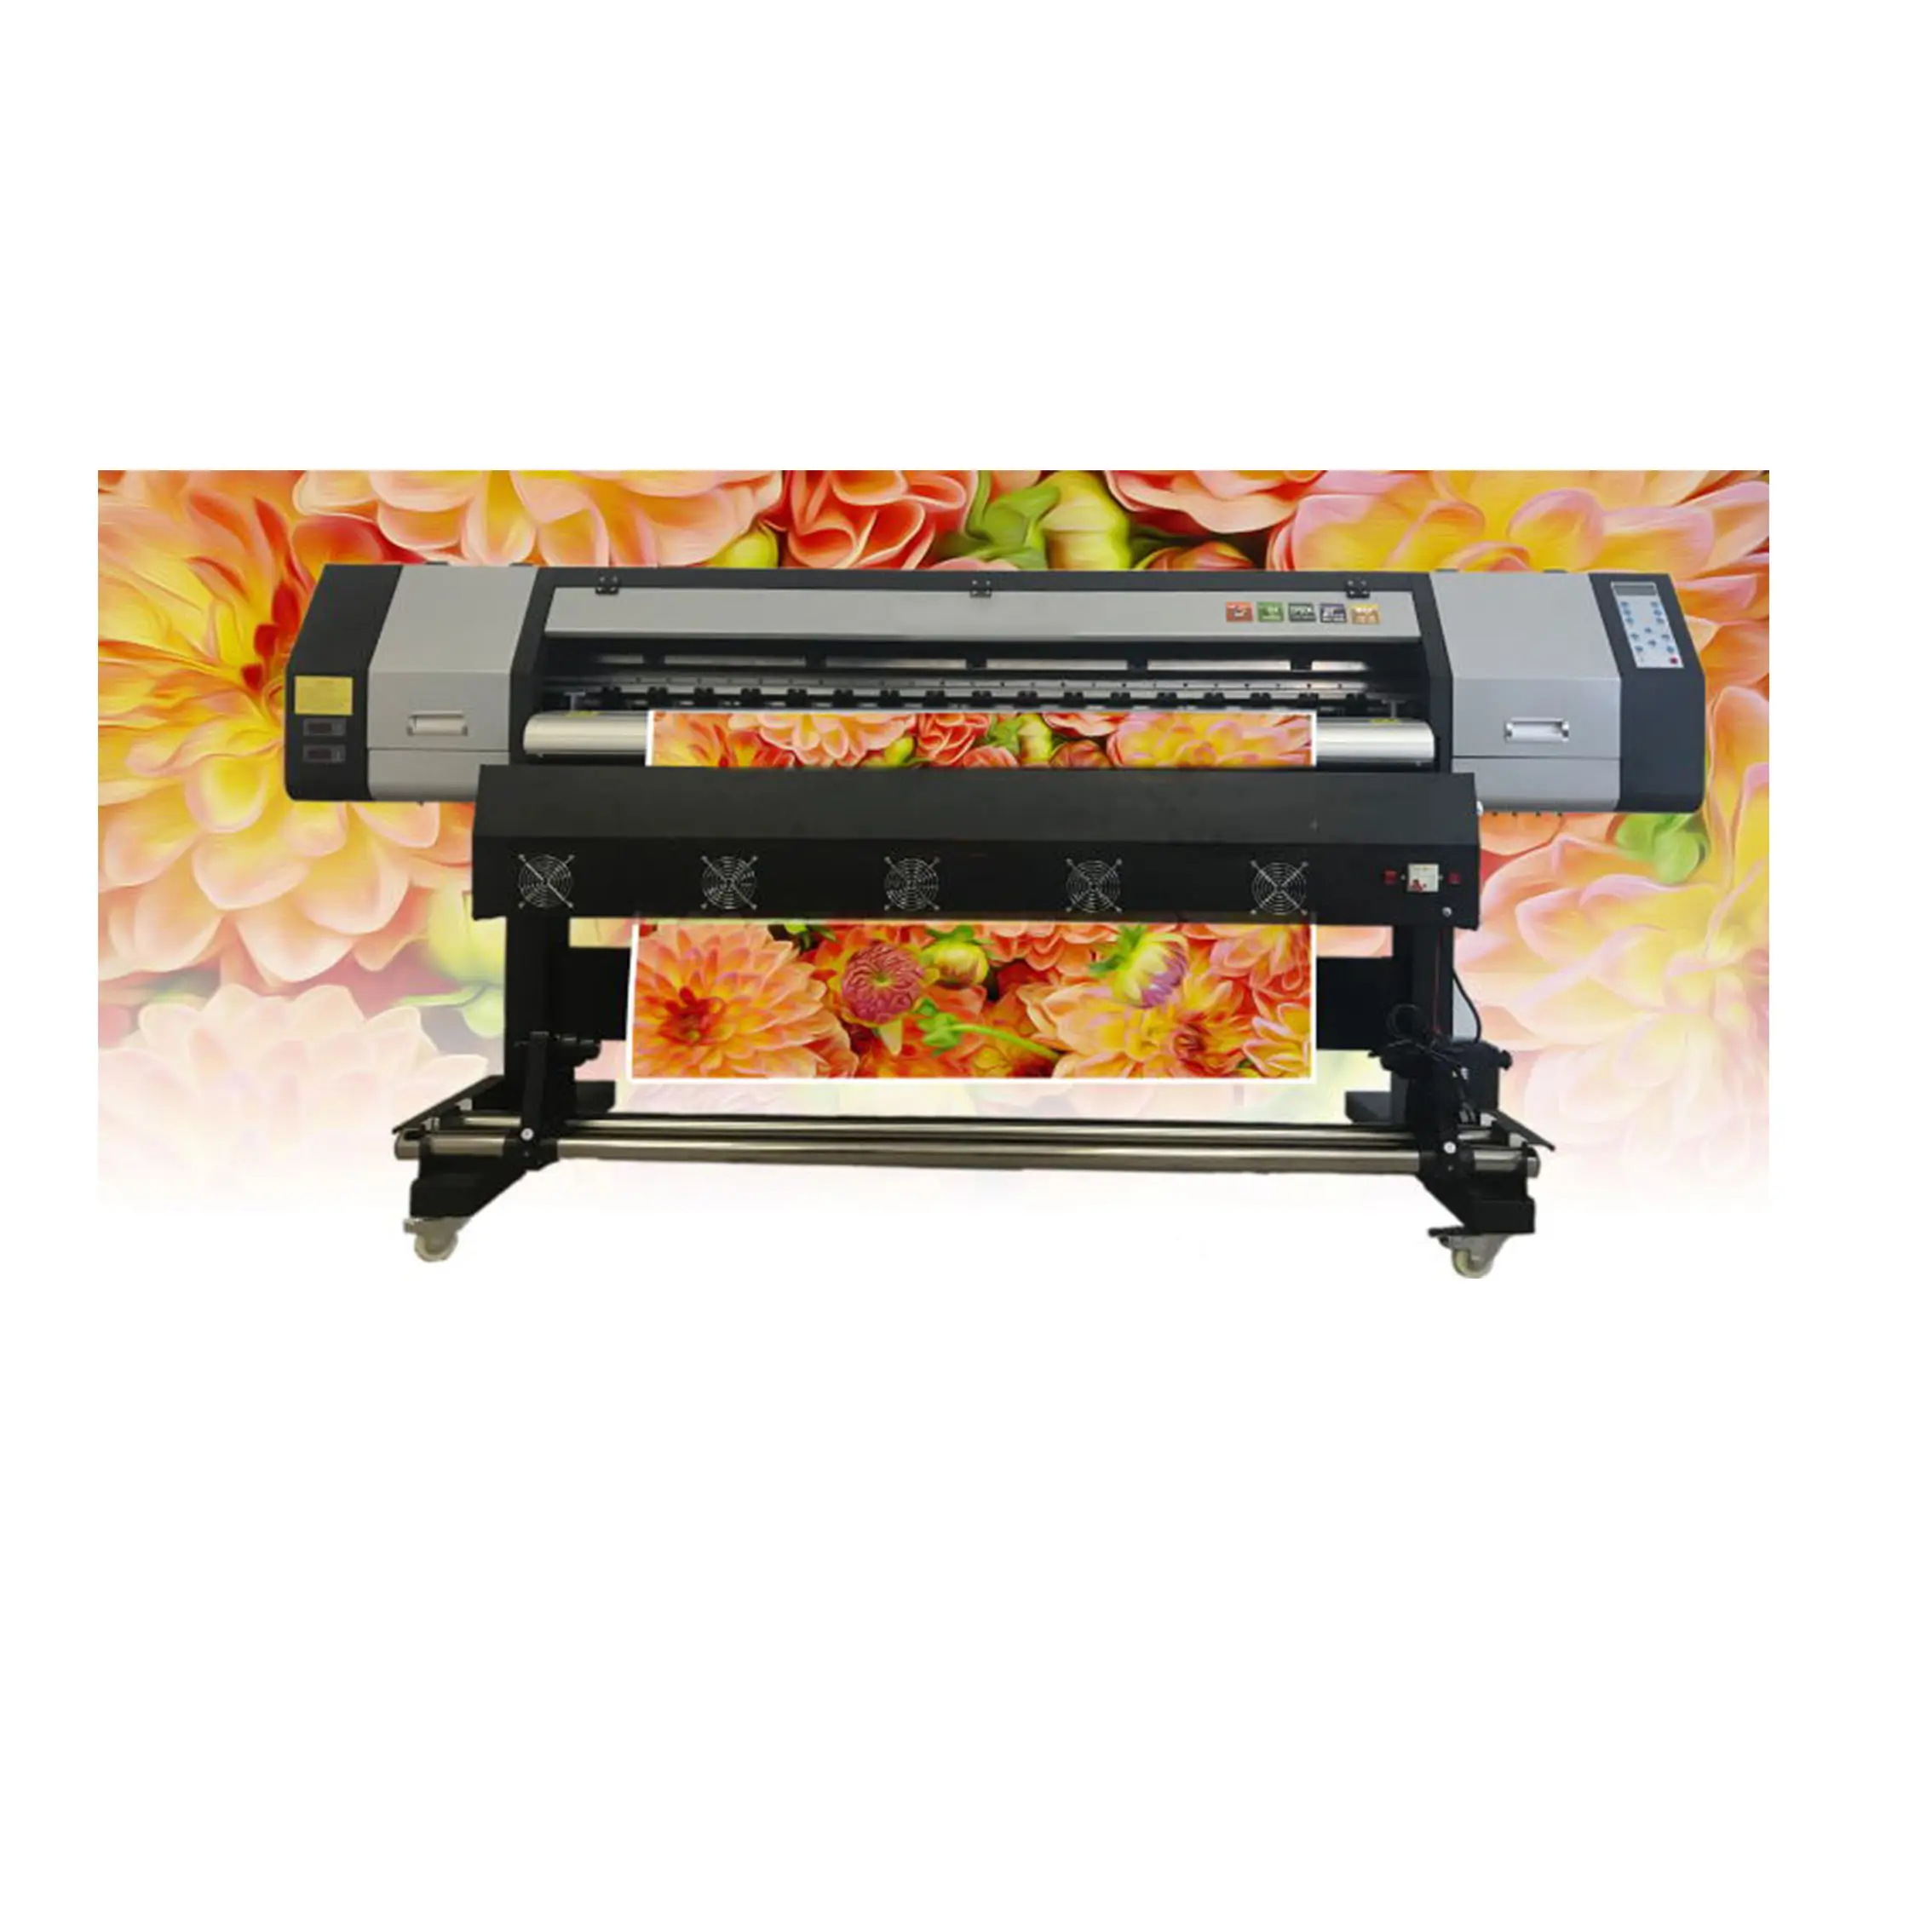 बड़े प्रारूप मुद्रण मशीन Epson नोक डिजिटल flatbad प्रिंटर